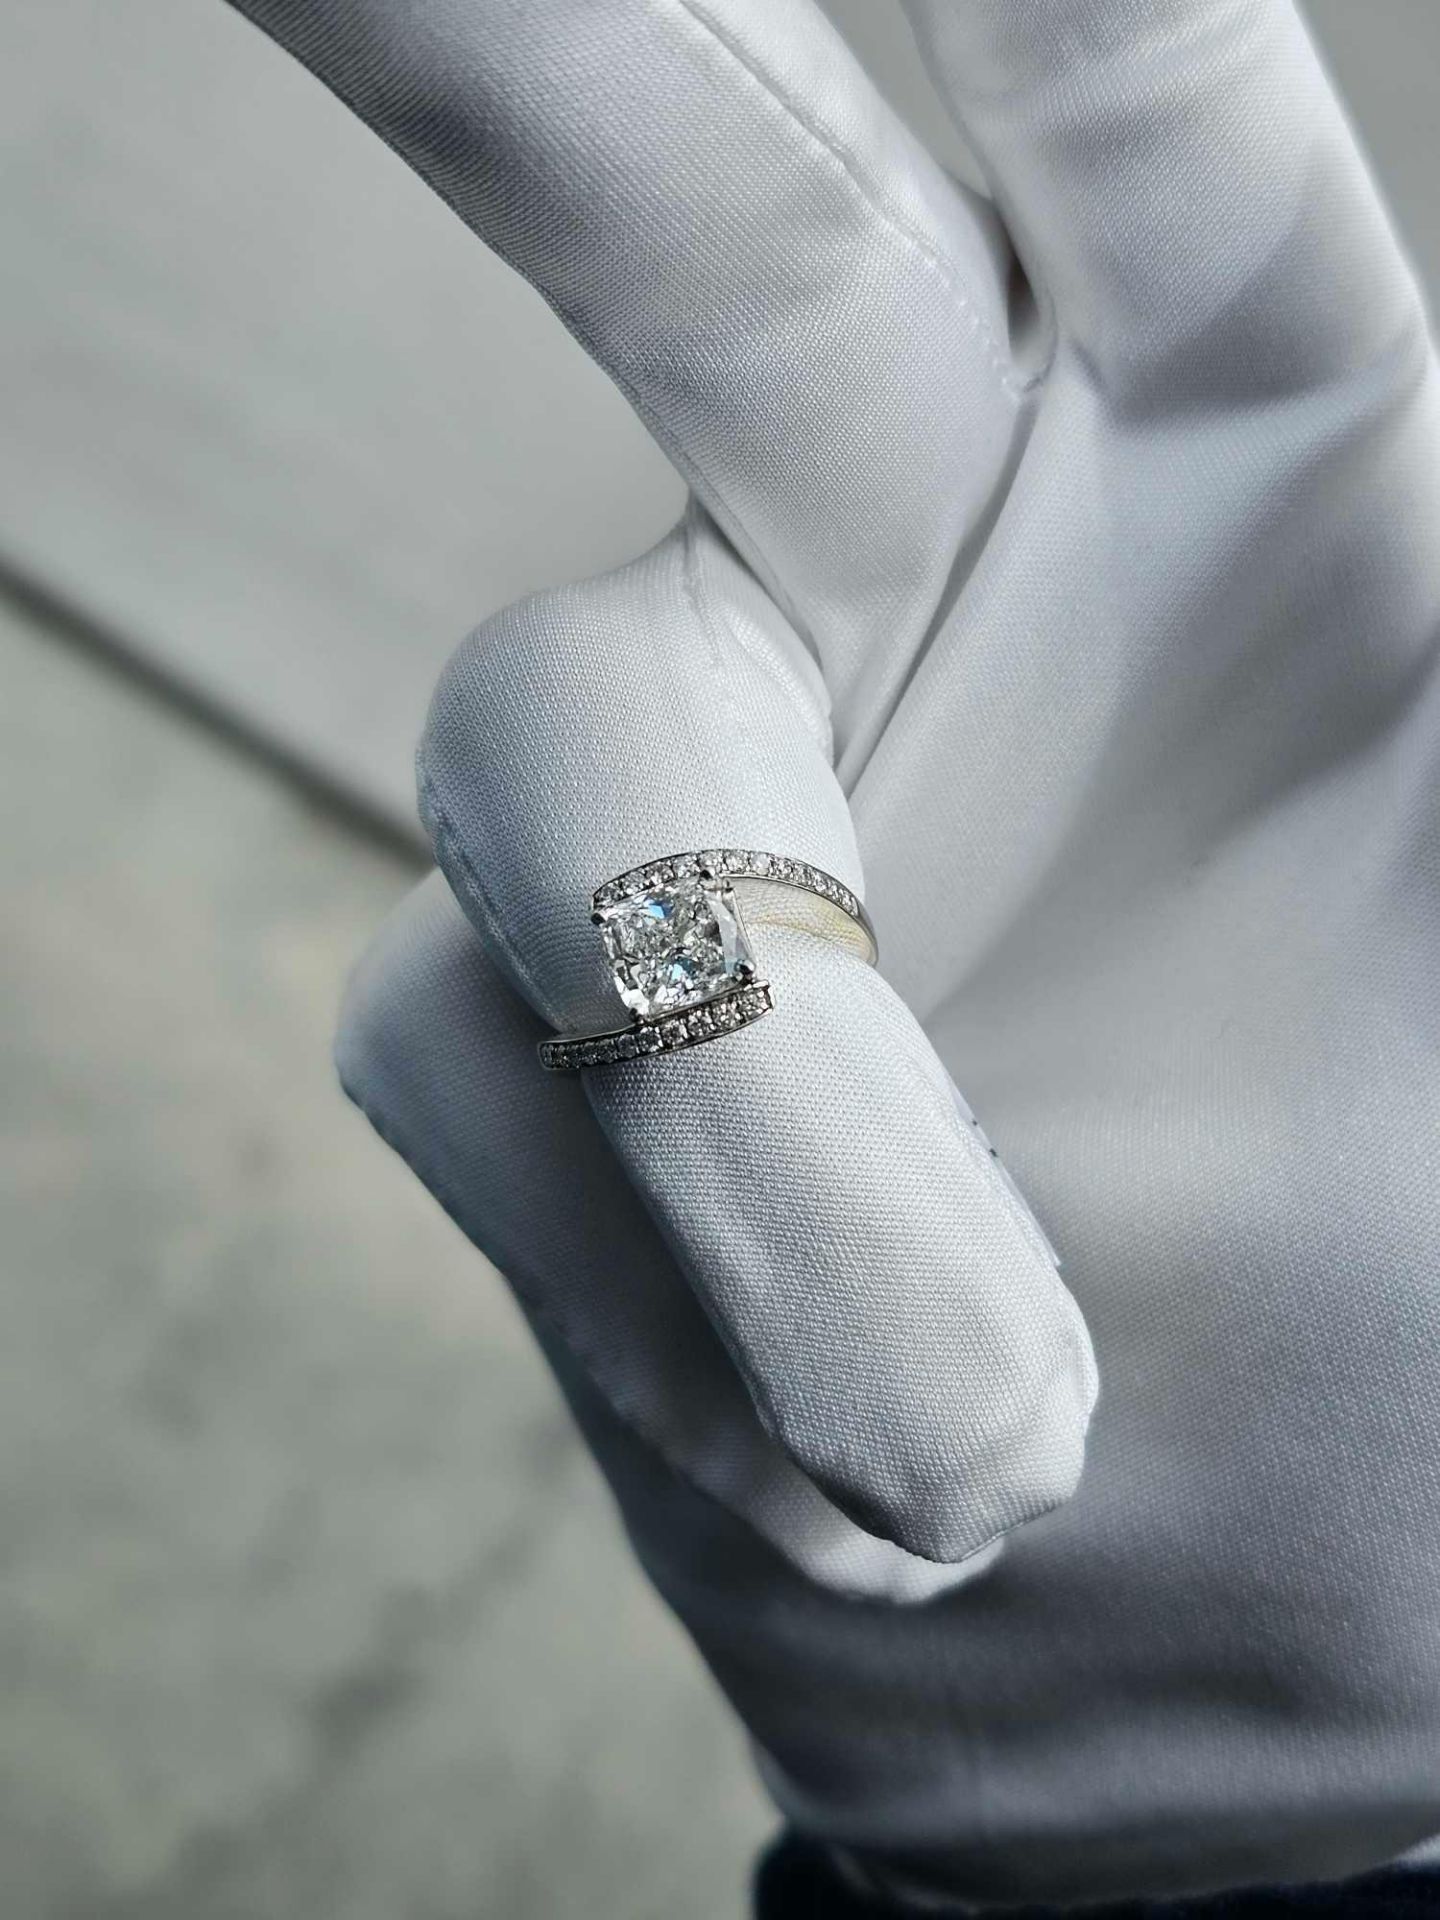 2 CT Diamond Ring (diamond is really nice) - Image 17 of 19